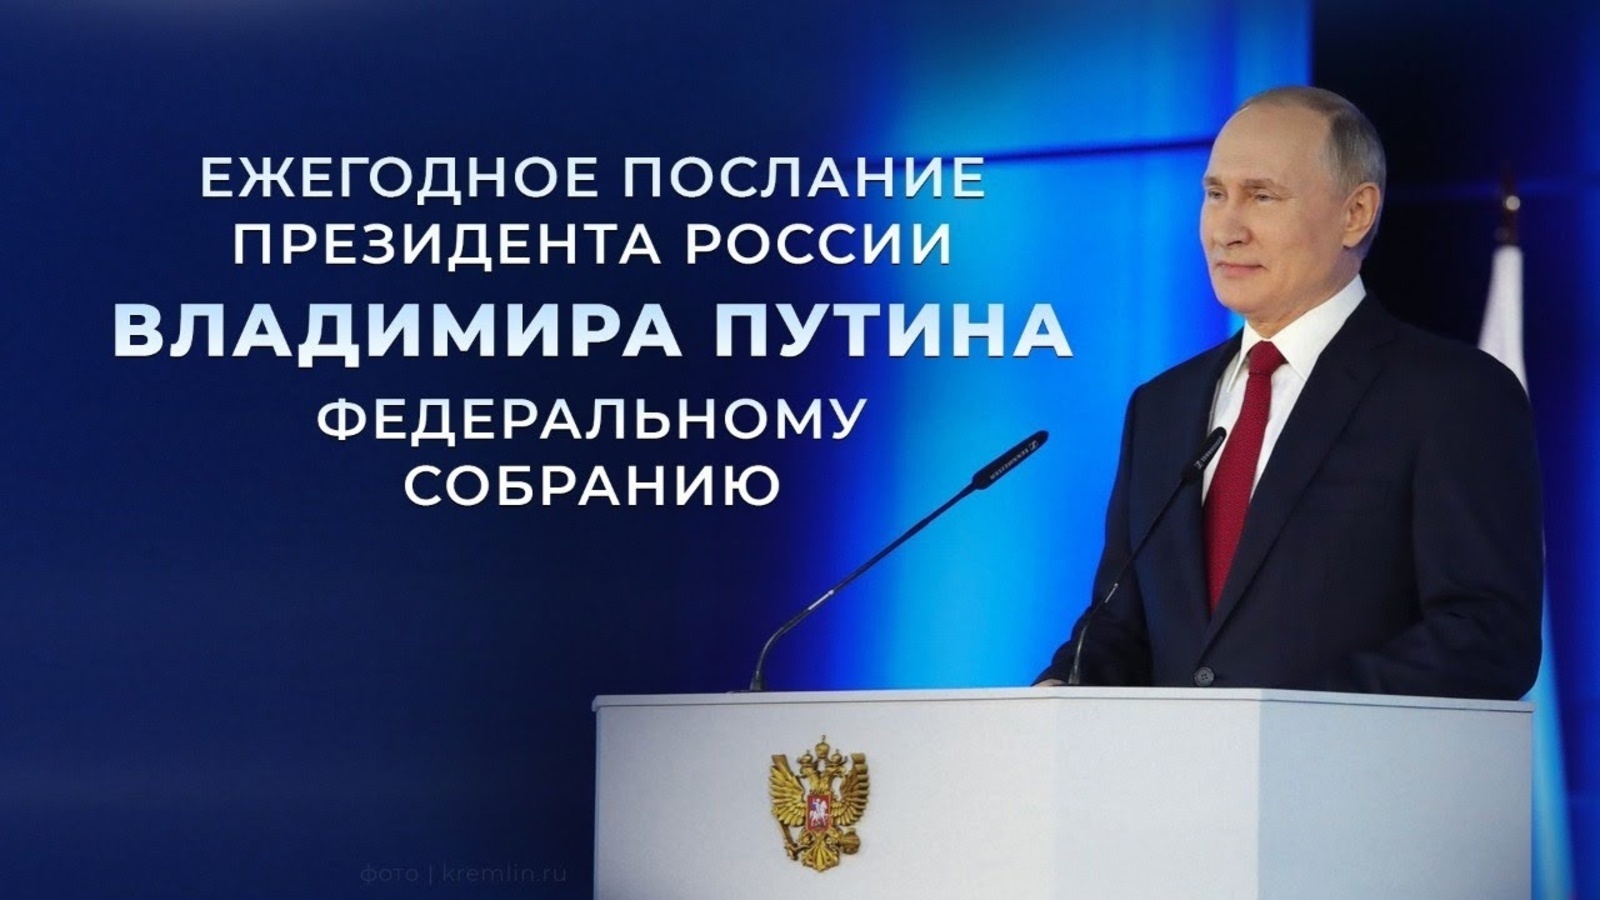 Послание Владимира Путина Федеральному собранию проходит в 19-й раз